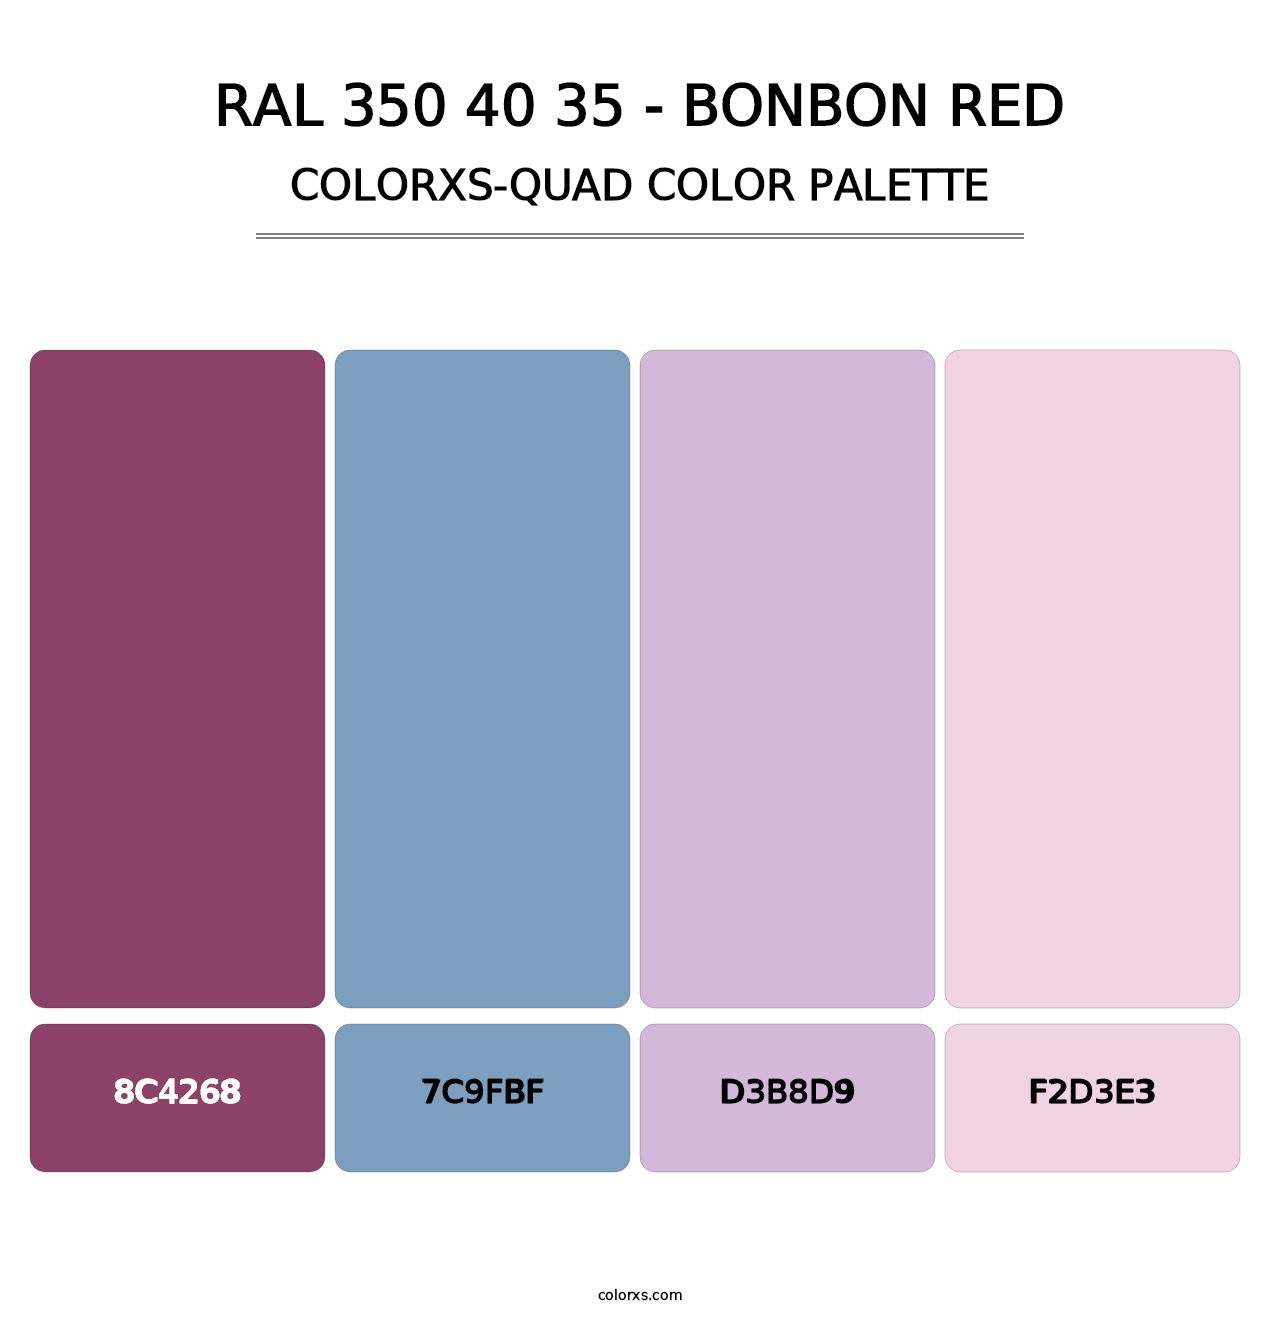 RAL 350 40 35 - Bonbon Red - Colorxs Quad Palette